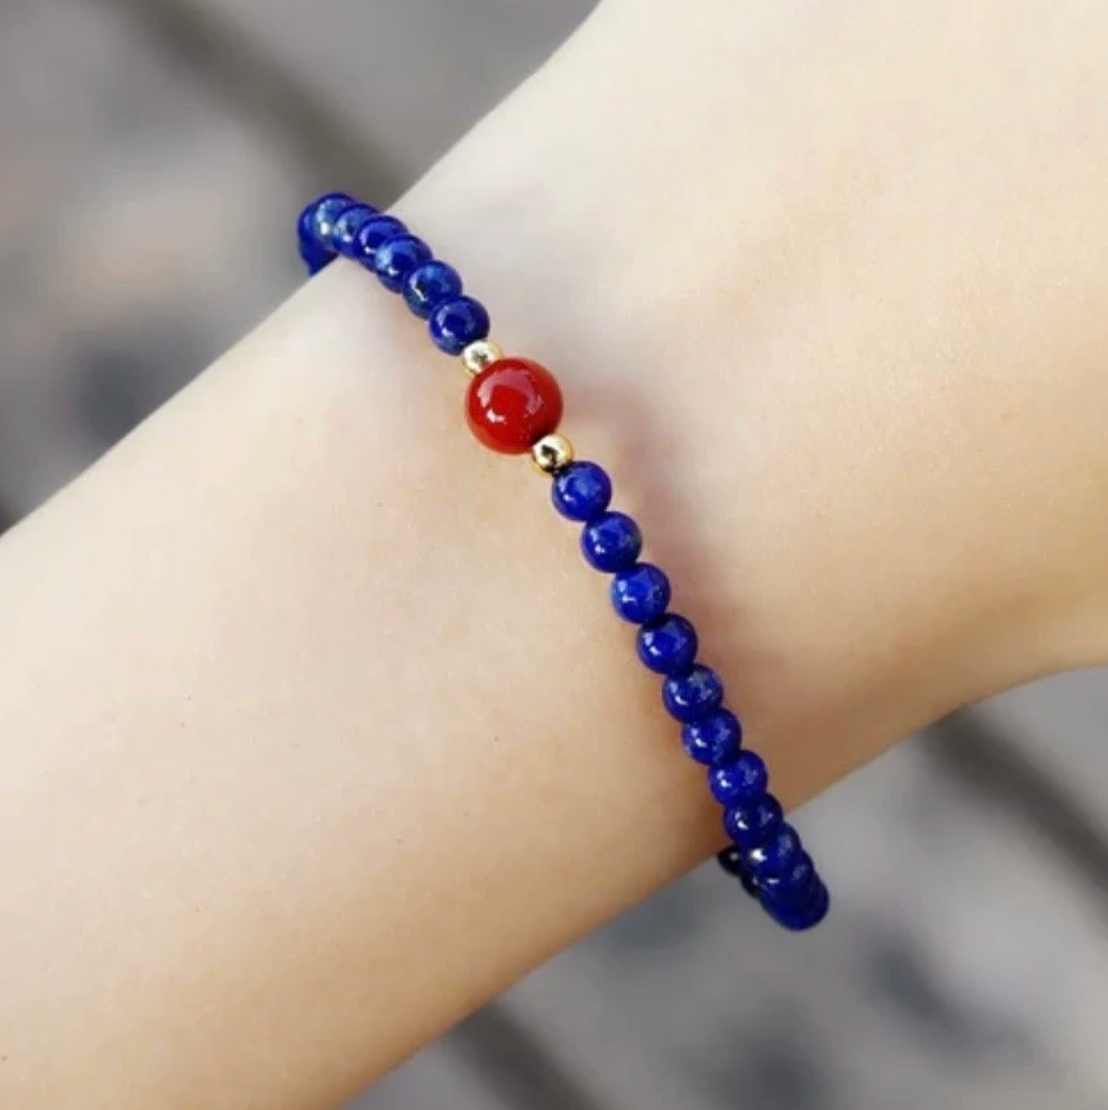 [Water] Minimalist Lapis Lazuli Cinnabar beaded Gemstone Stretchy Bracelet